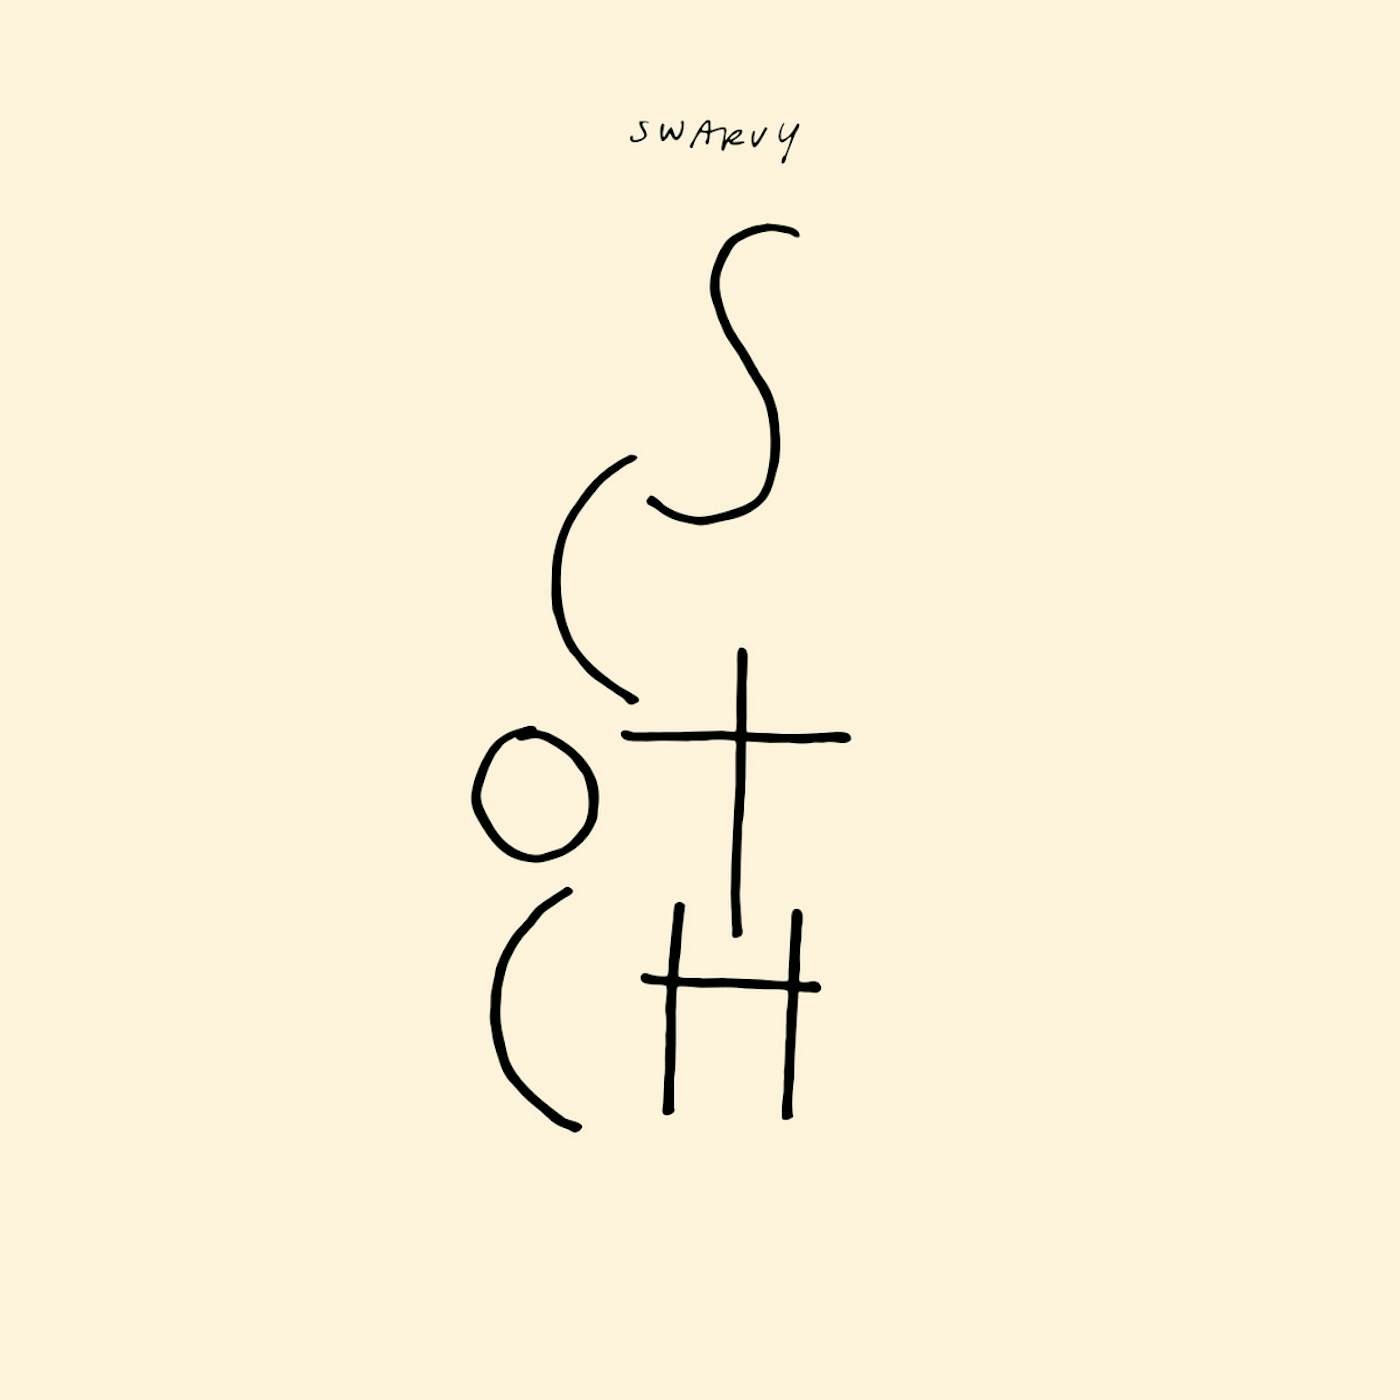 Swarvy SCOTCH Vinyl Record - Digital Download Included